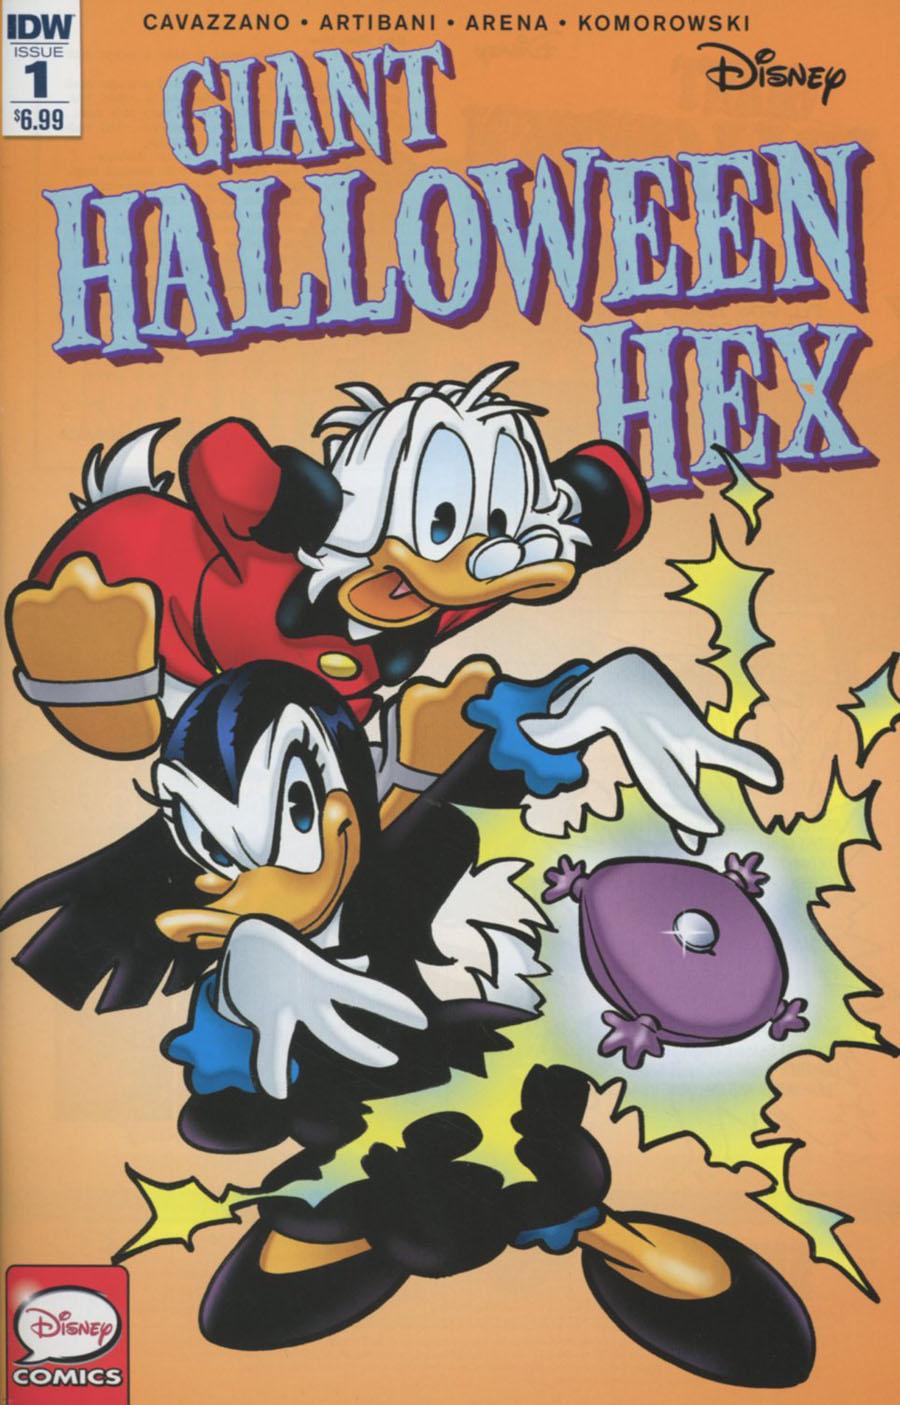 Disneys Giant Halloween Hex Vol. 1 #1